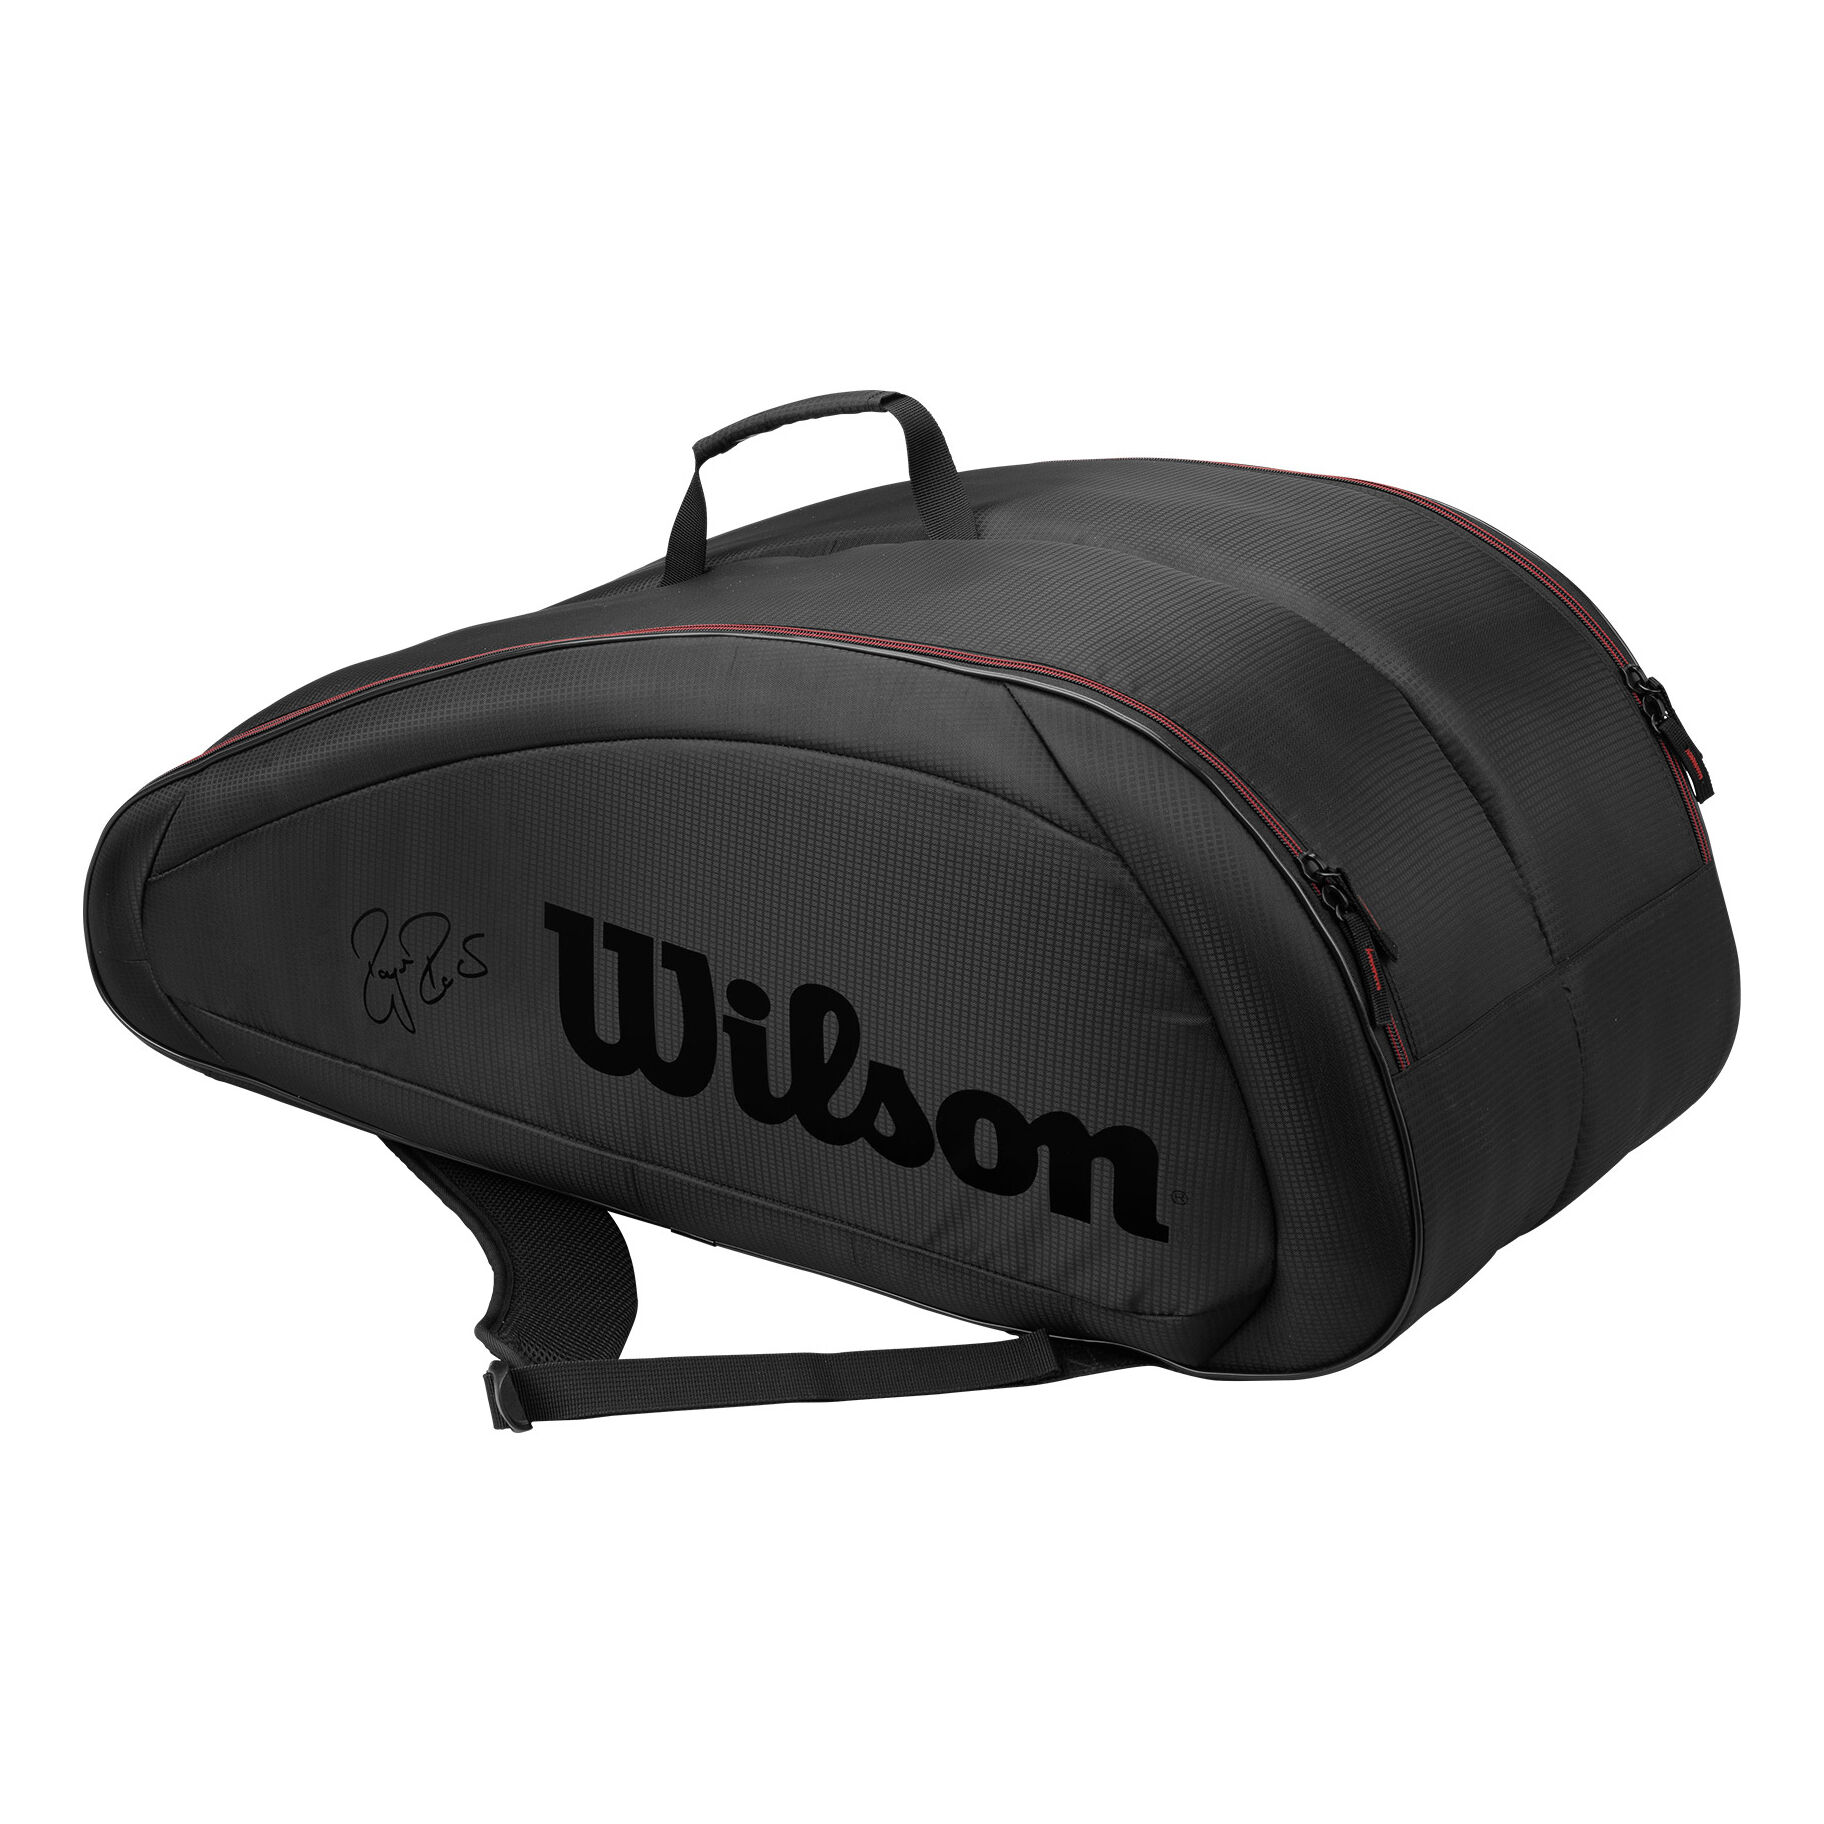 taglia unica Wilson Fed Team 12 Pack borsa per racchette da tennis, Unisex adulto, Nero/Rosso, black/red 